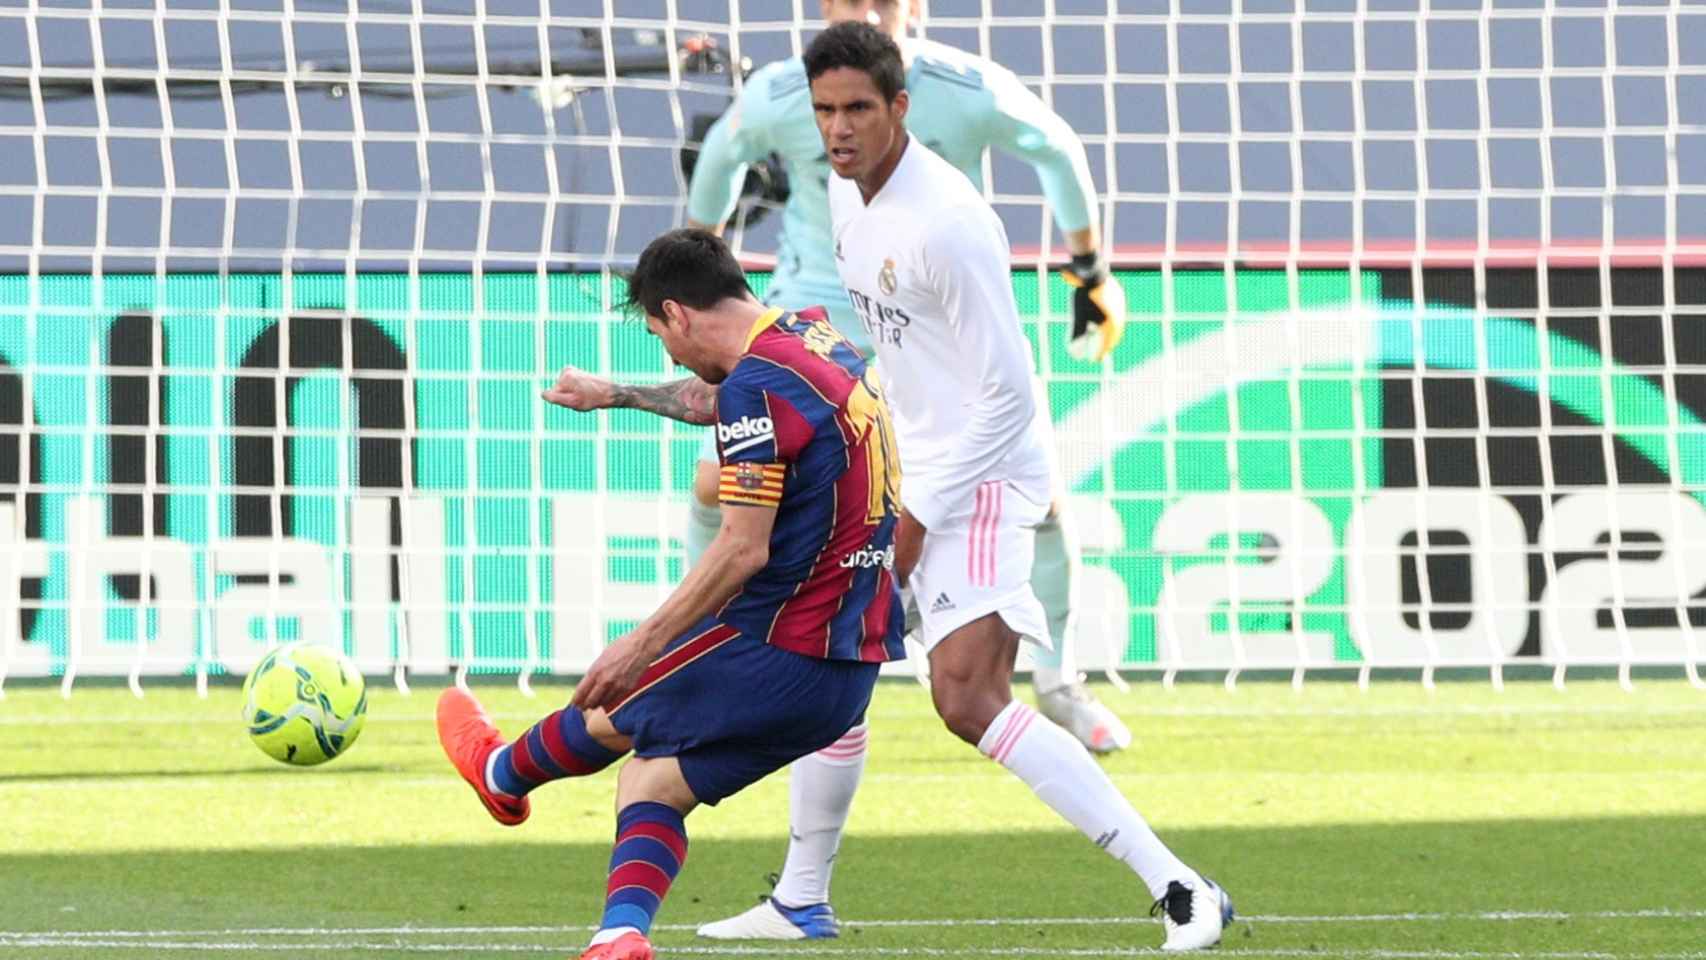 Disparo de Messi ante Varane y Courtois en El Clásico de La Liga